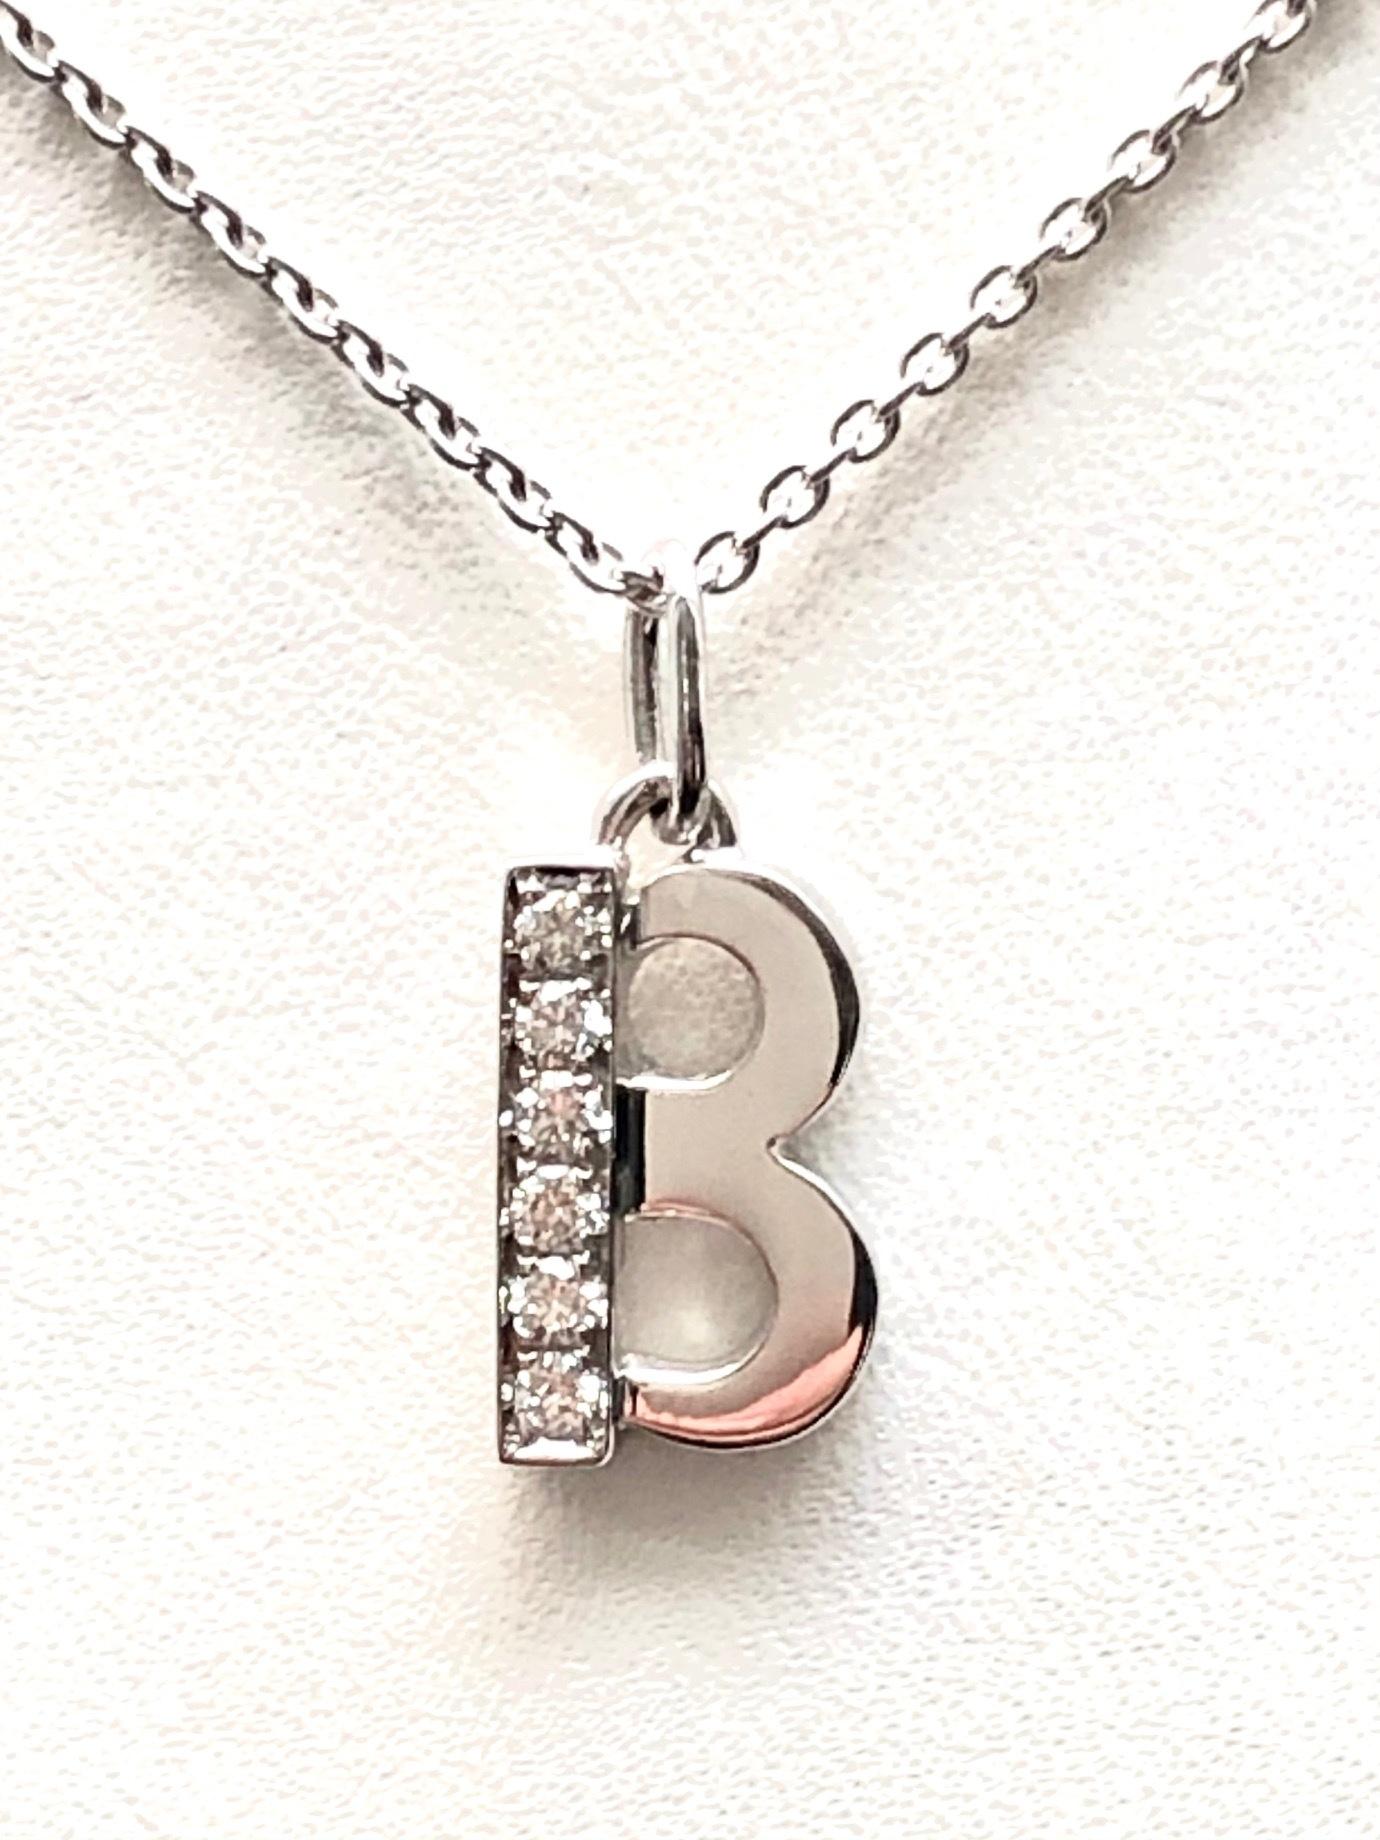 b pendant necklace